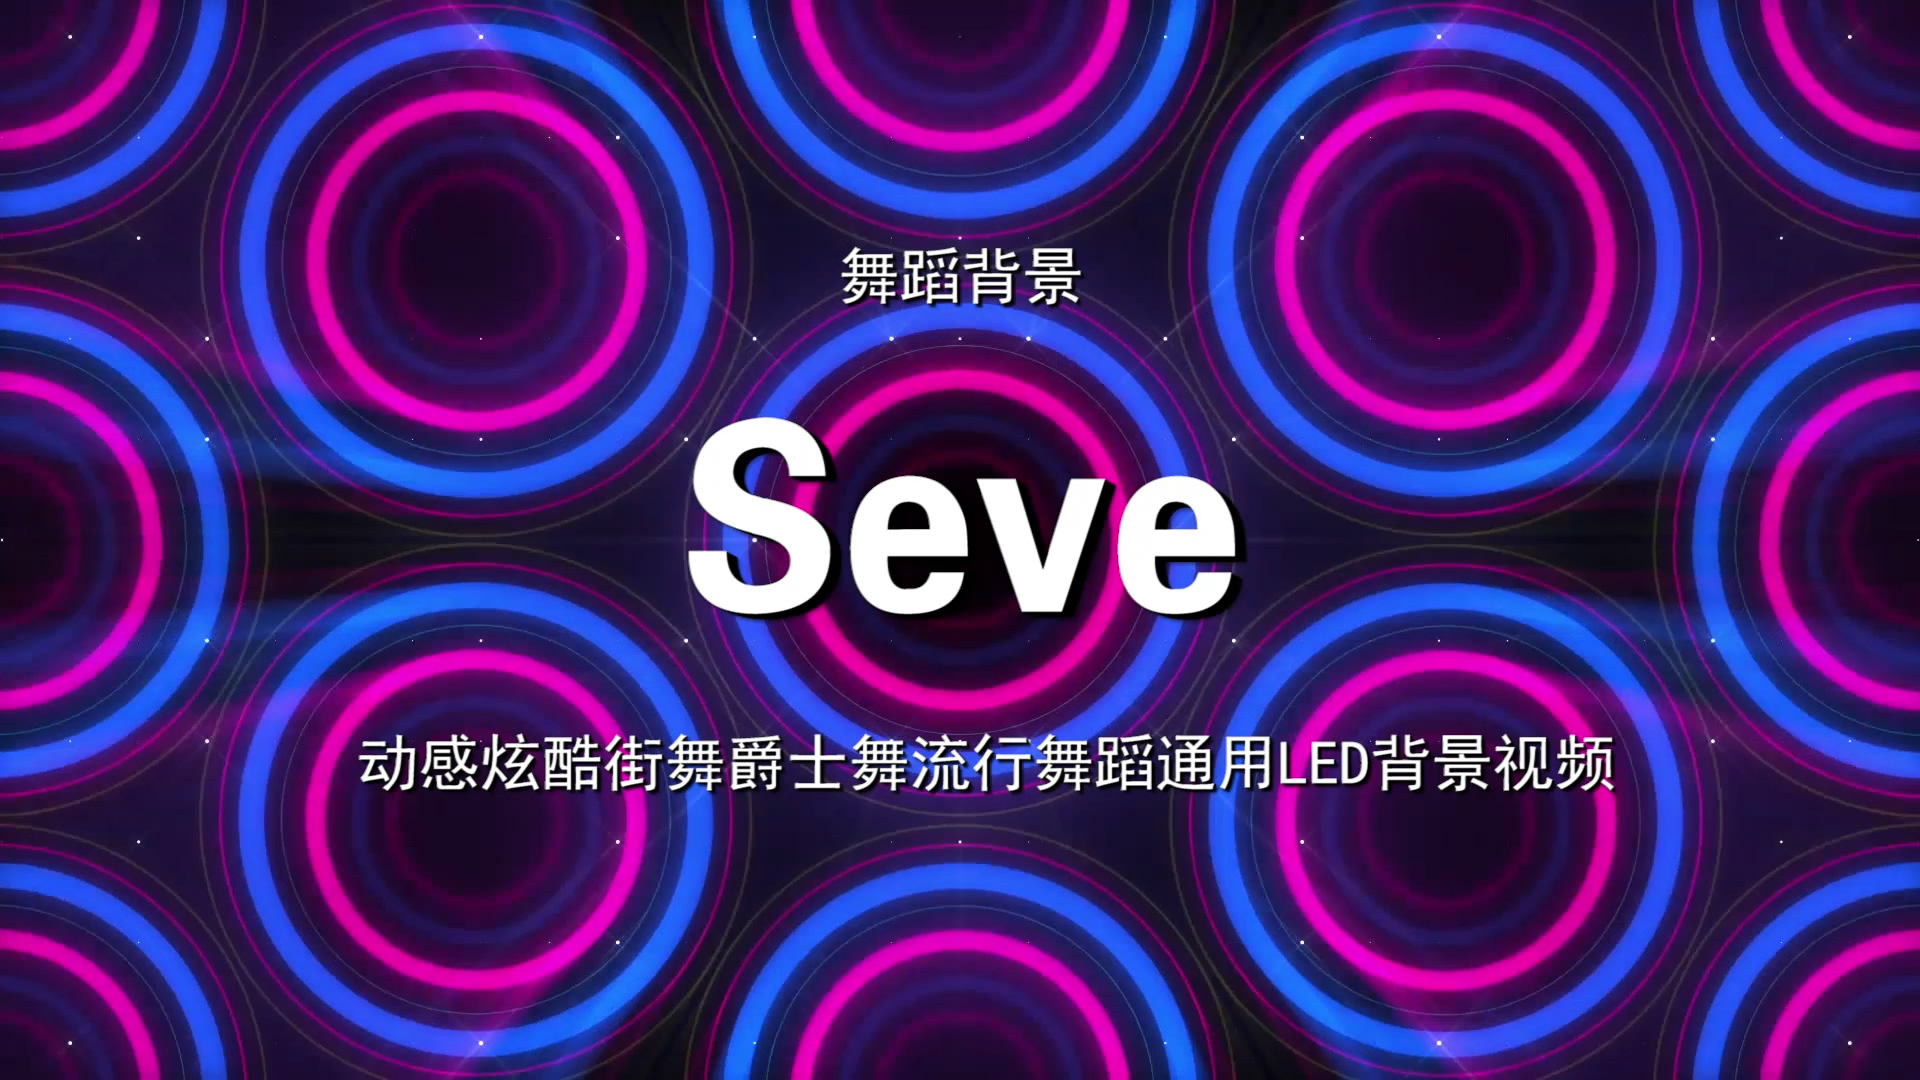 Seve 动感炫酷街舞流行歌舞LED背景大屏幕视频素材